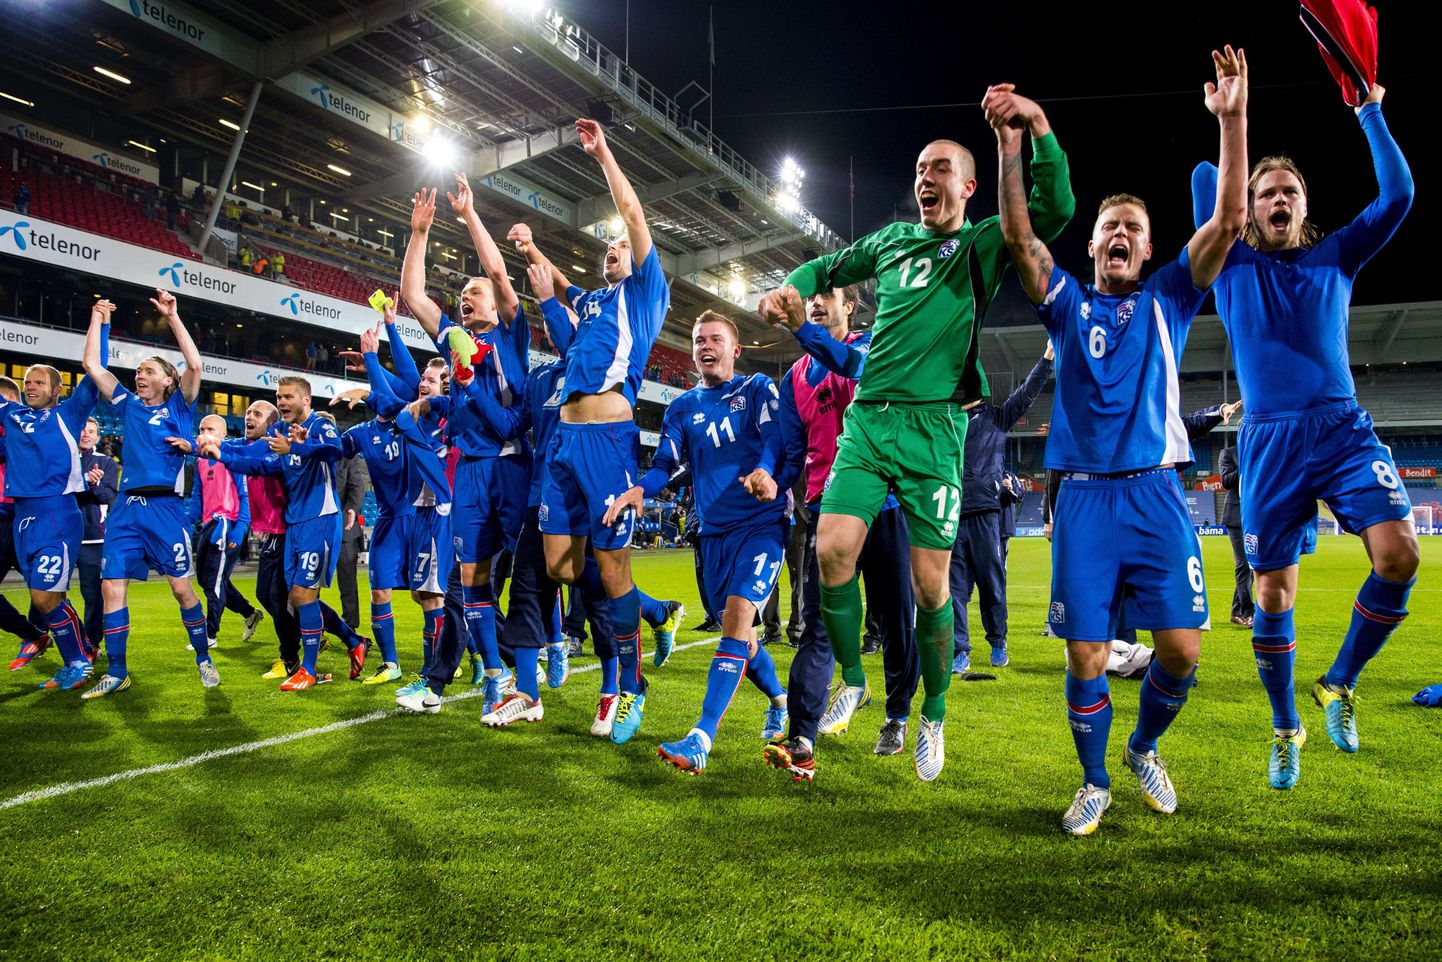 Islandi koondis tähistamas play-off'i jõudmist.